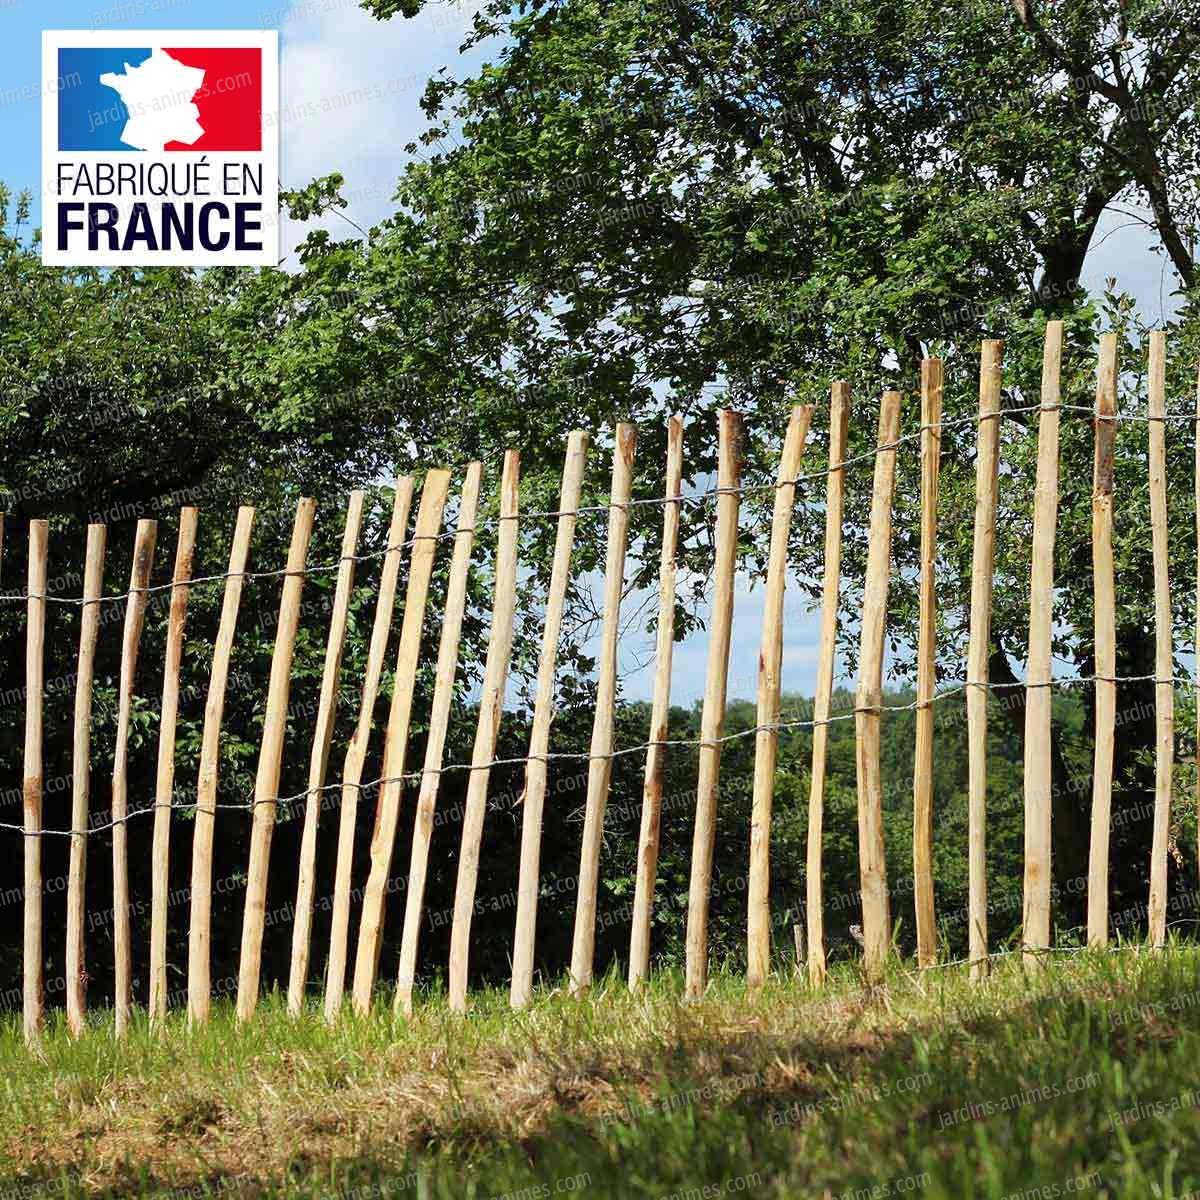 La ganivelle en bois de châtaigner : tout savoir sur cette clôture